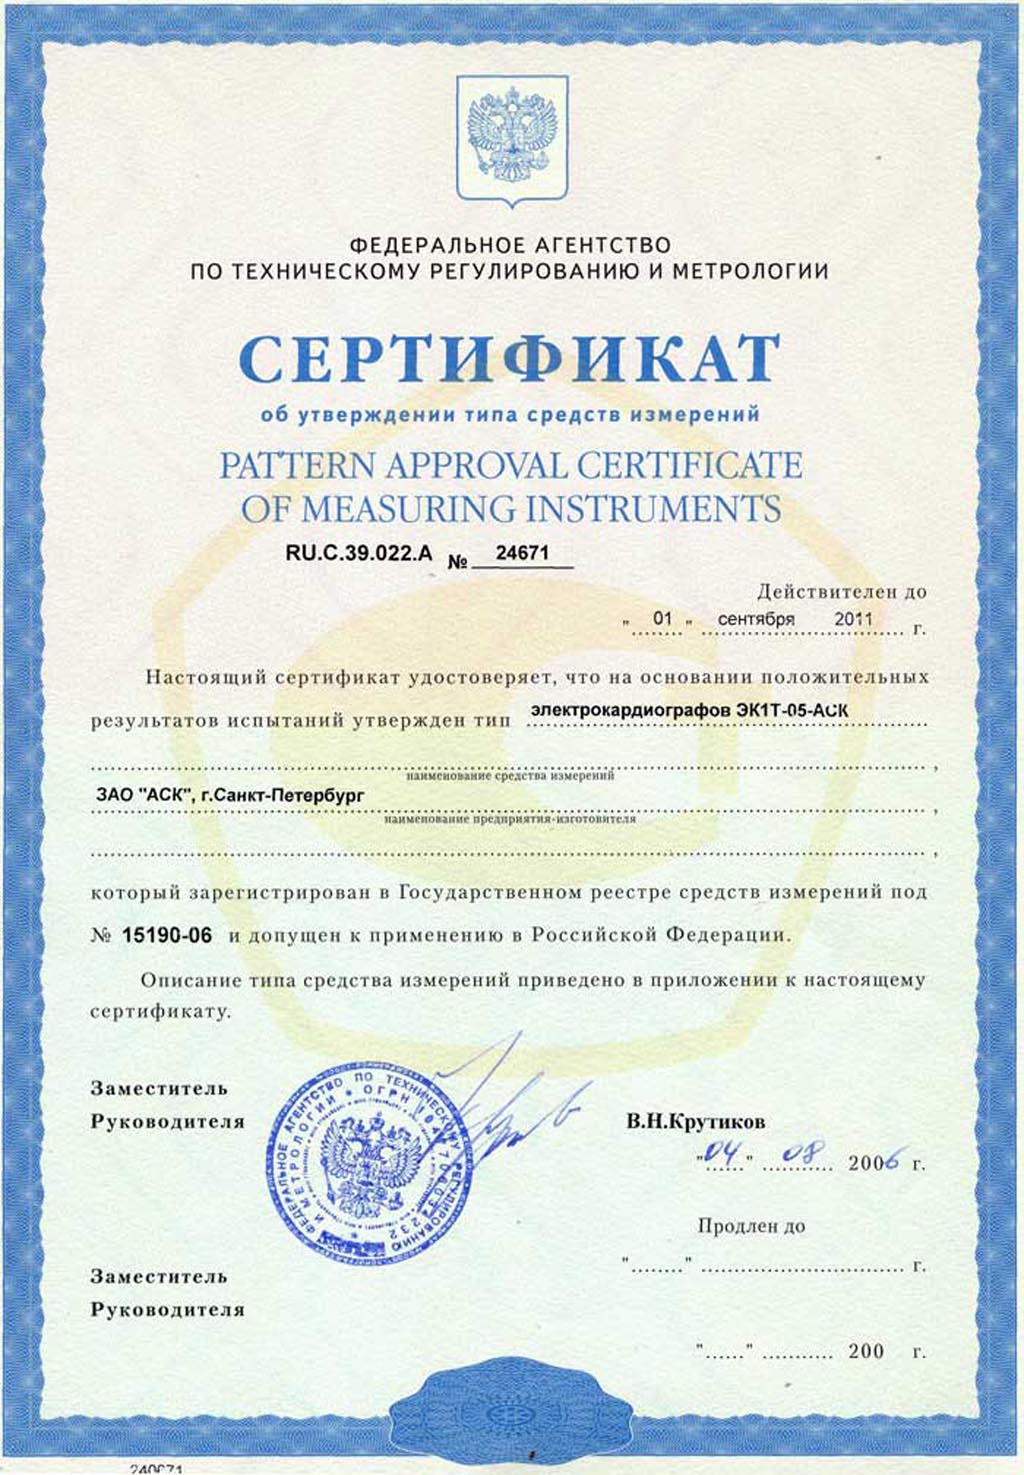 сертификат ЭК1Т-05-АСК электрокардиограф